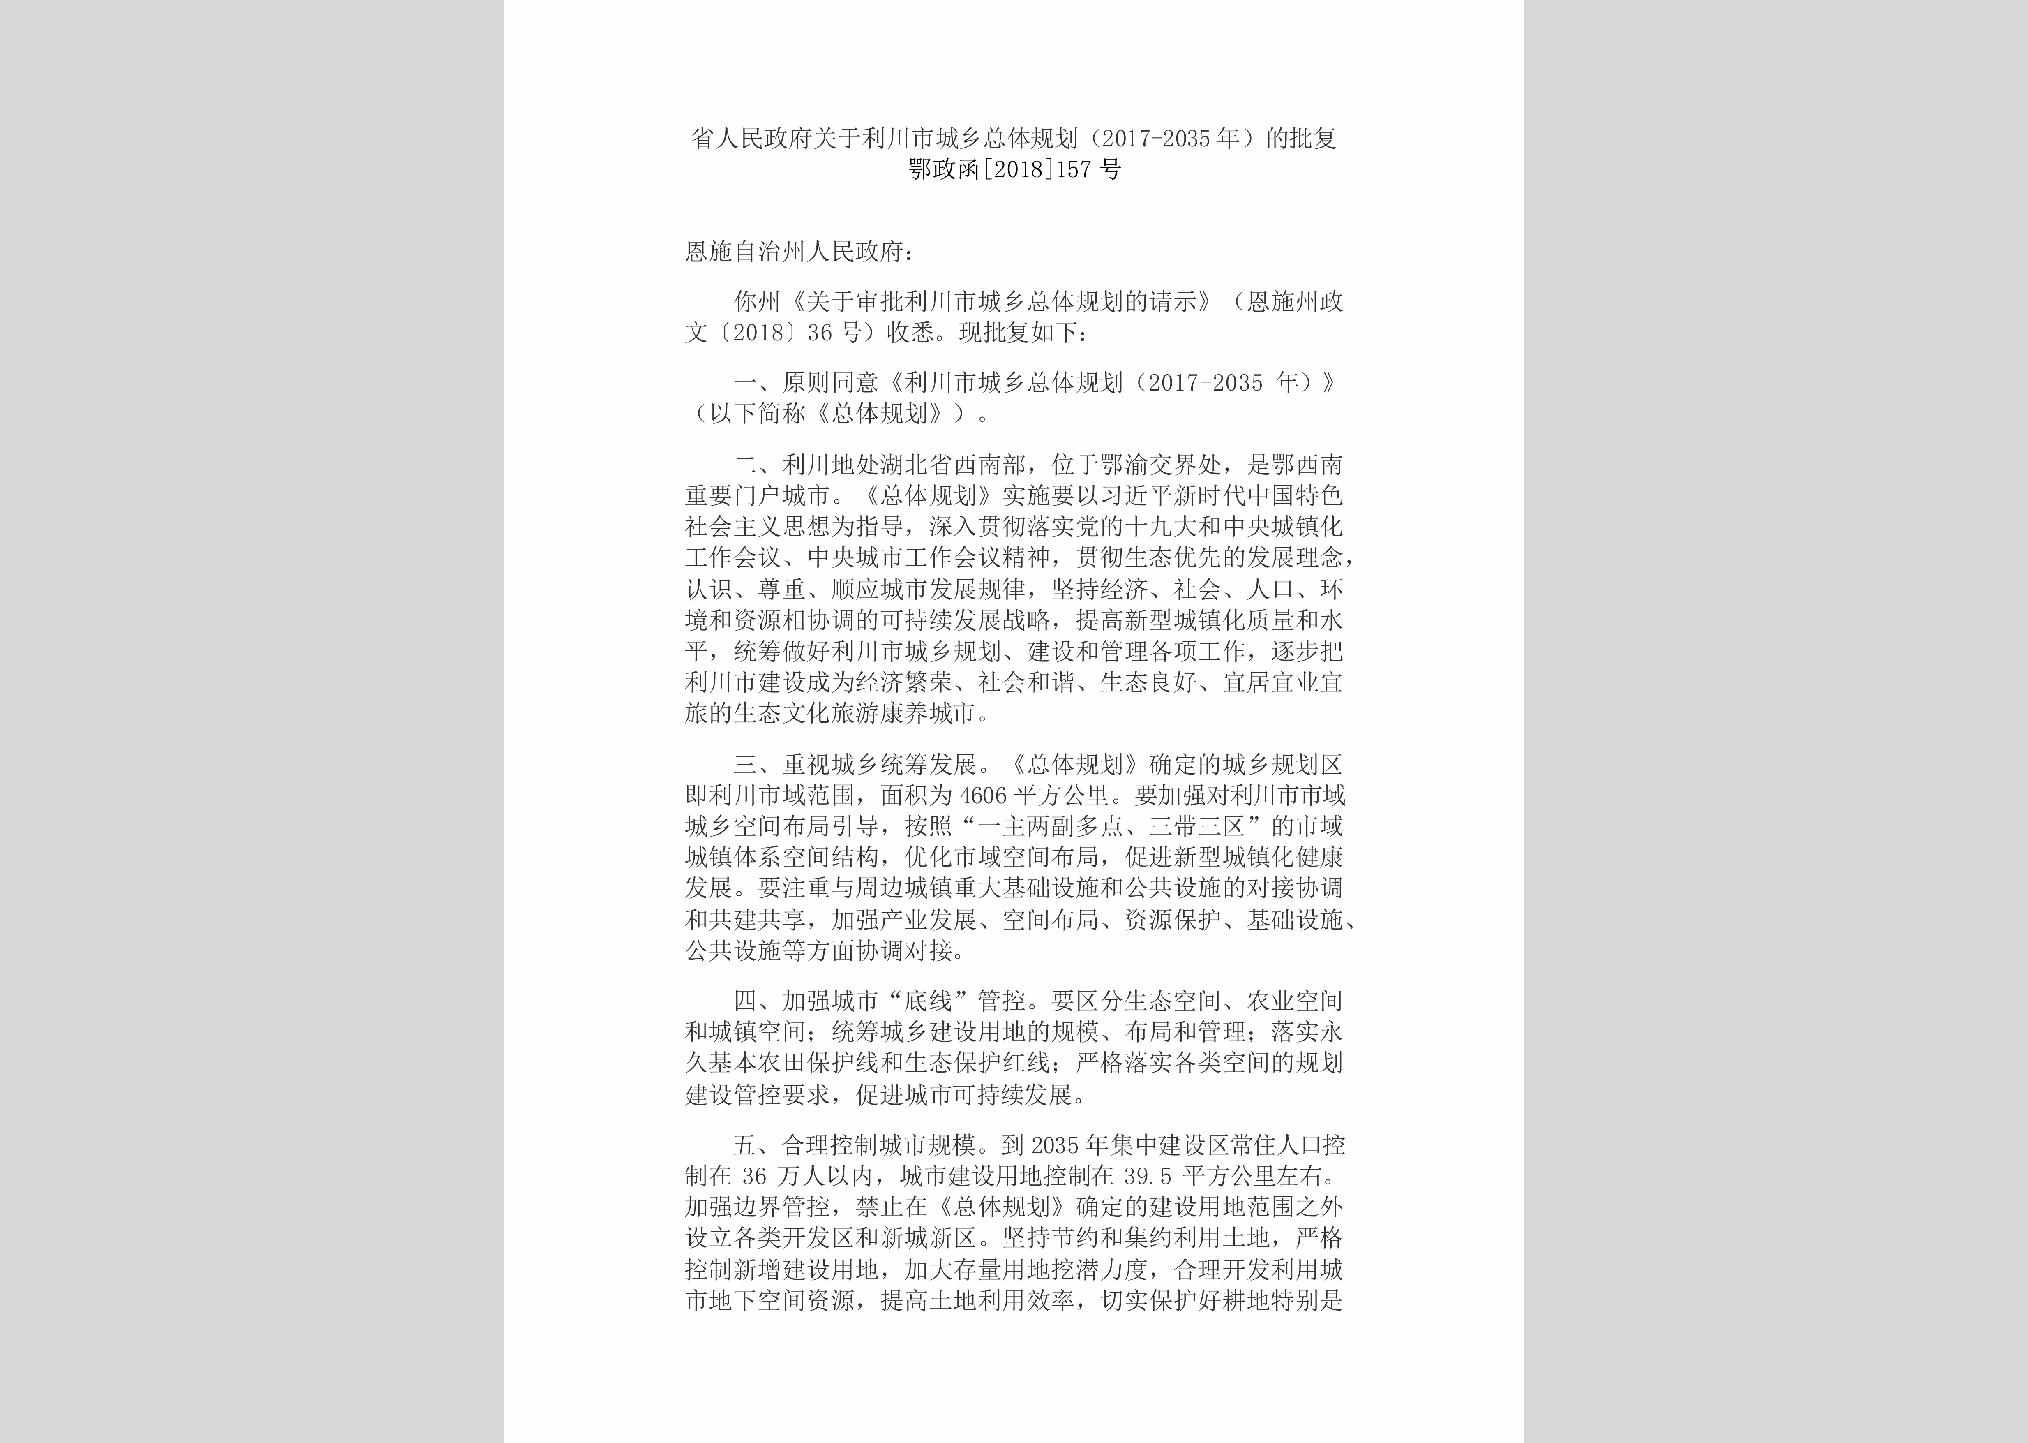 鄂政函[2018]157号：省人民政府关于利川市城乡
总体规划（2017-2035年）的批复